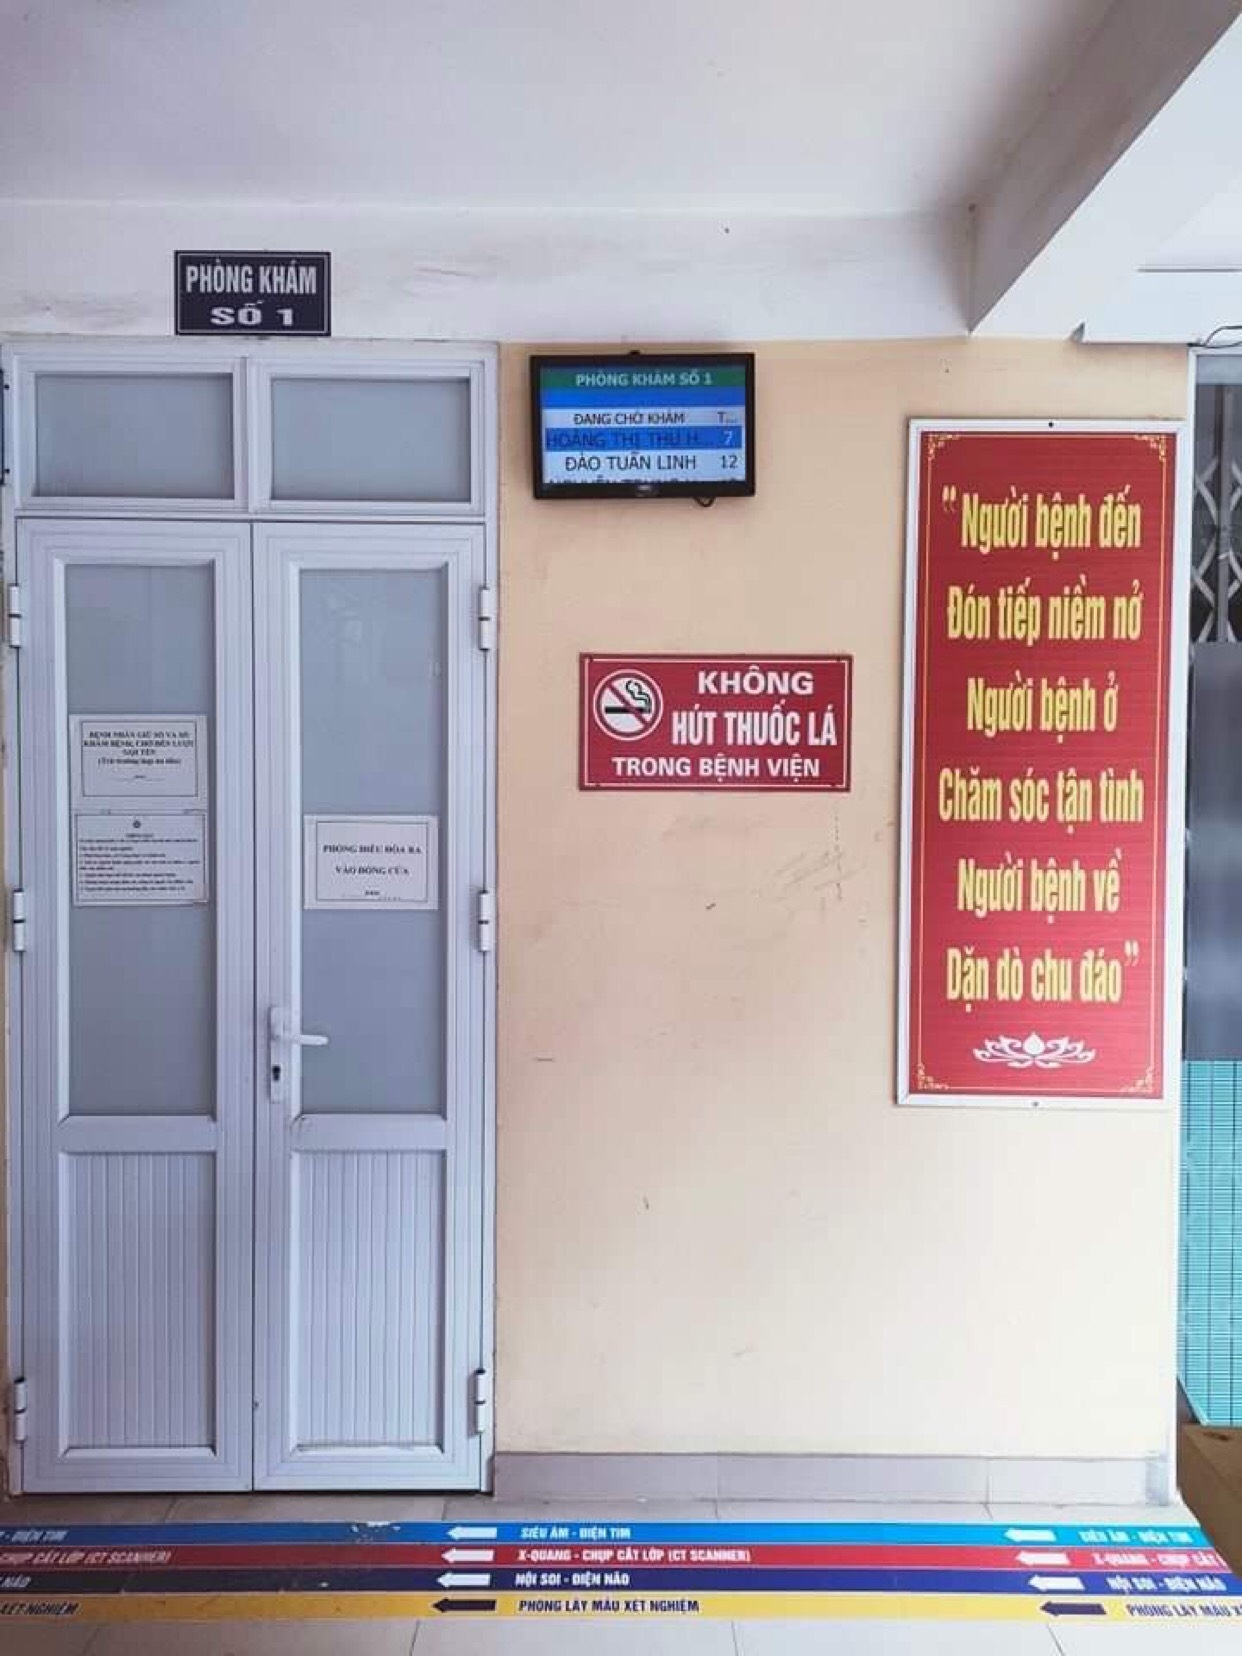 Bệnh viện Xây dựng Việt Trì: Hướng tới xây dựng bệnh viện không khói thuốc lá